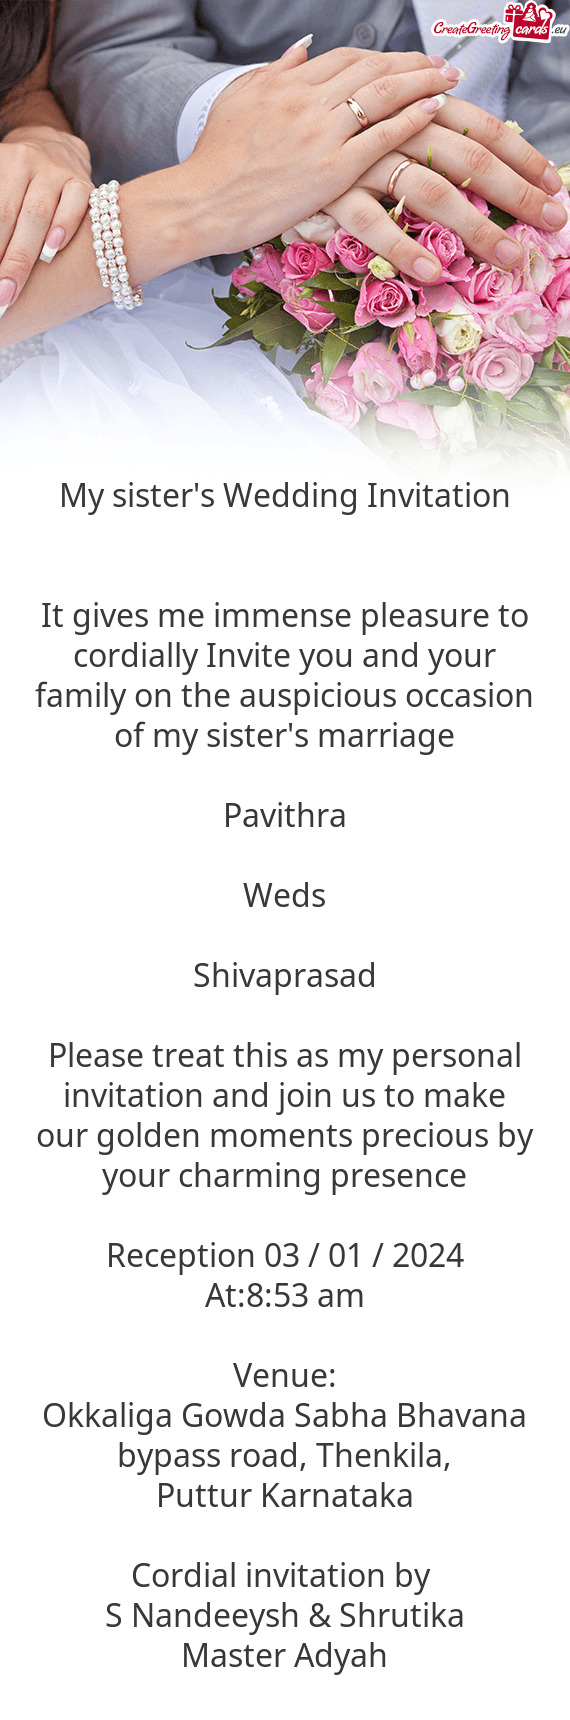 Shivaprasad